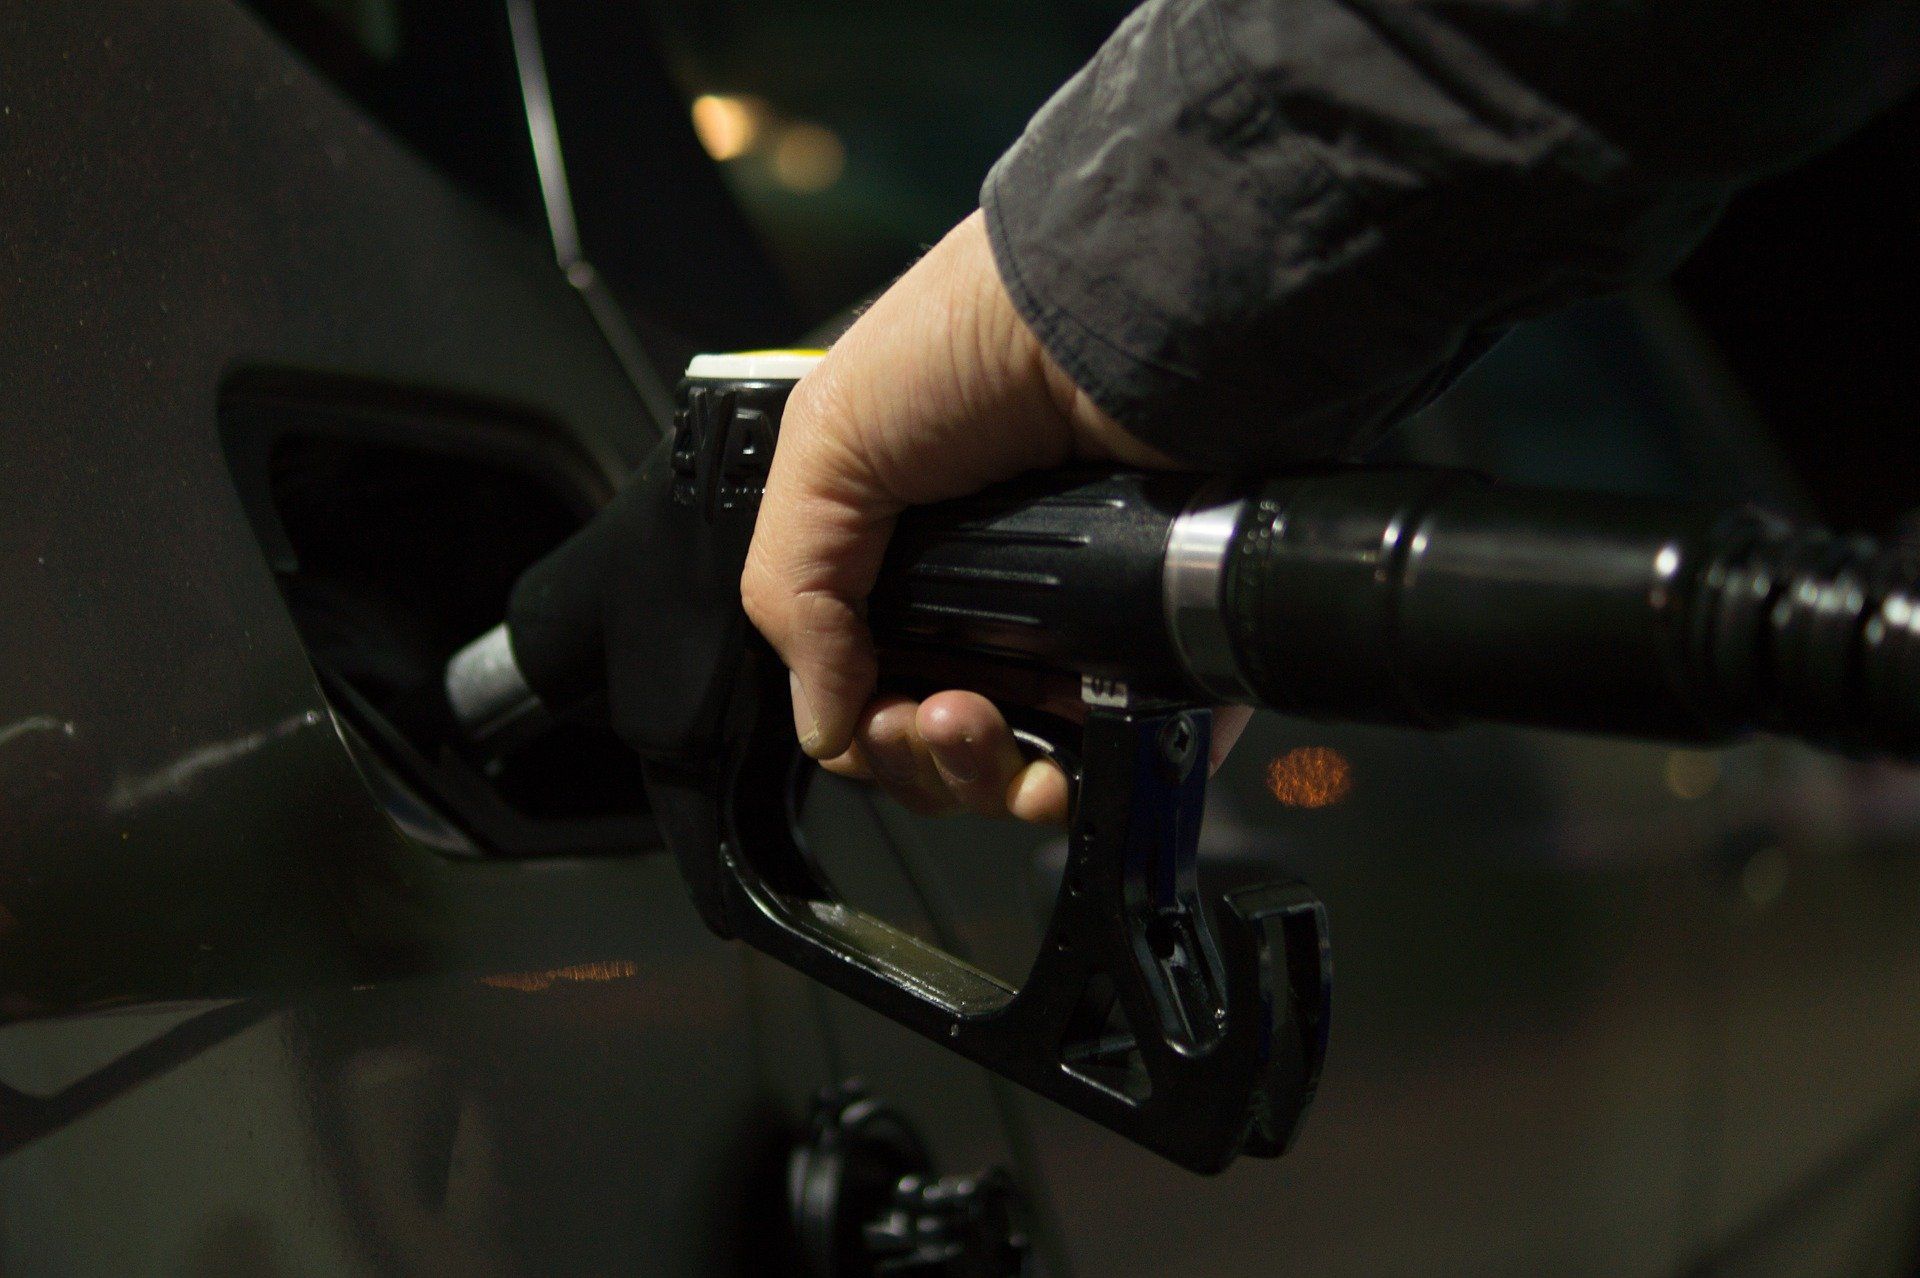 Fuel price May 31, 2022: Petrol Rs 96.72, diesel Rs 89.62 in Delhi